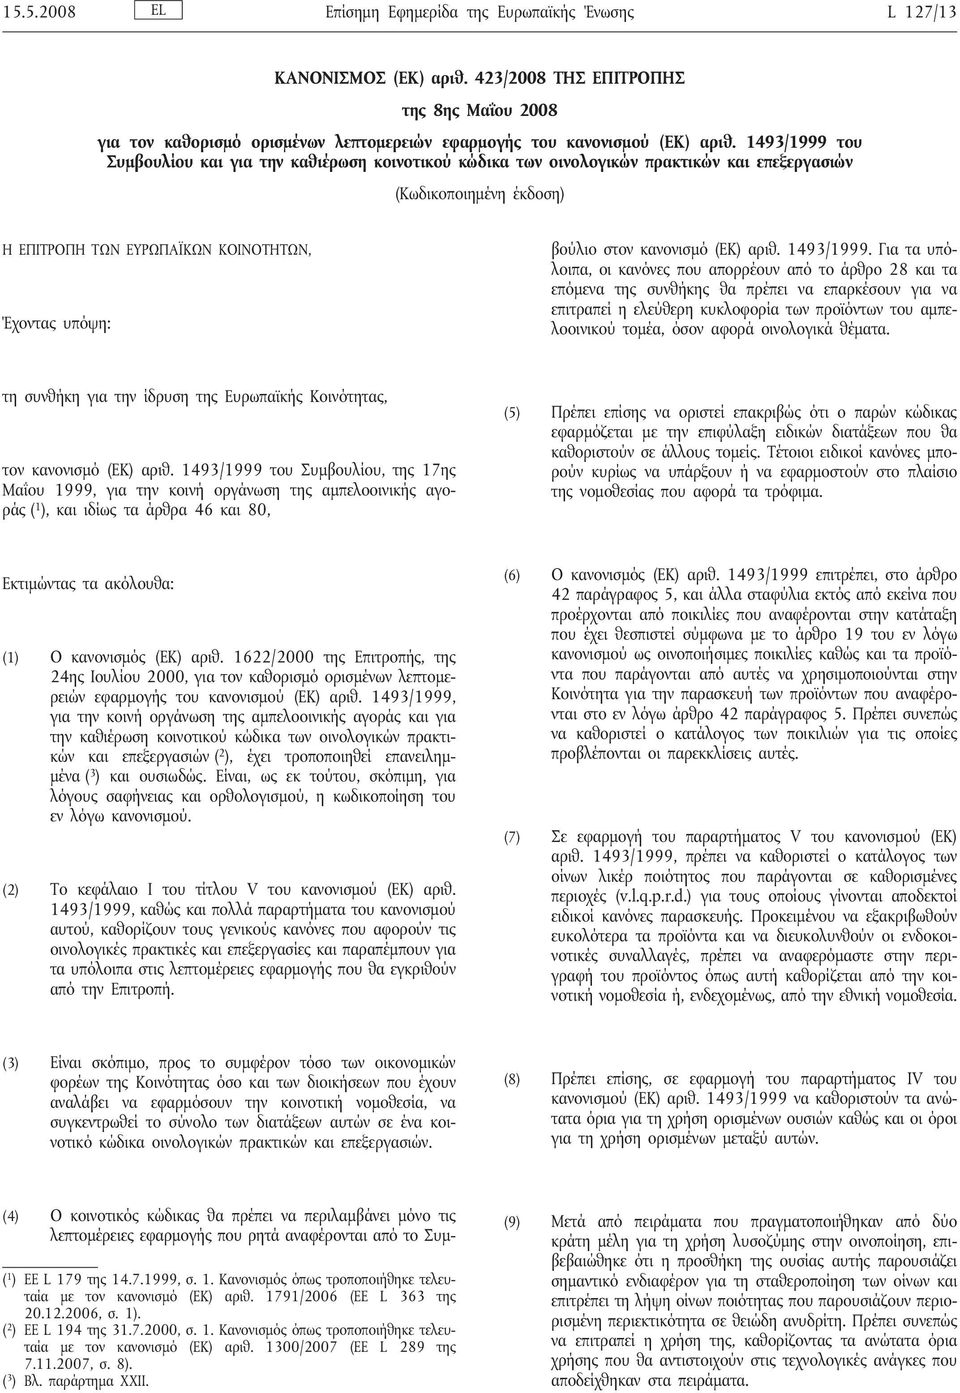 κοινοτικός κώδικας θα πρέπει να περιλαμβάνει μόνο τις λεπτομέρειες εφαρμογής που ρητά αναφέρονται από το Συμβούλιο στον κανονισμό (ΕΚ) αριθ. 1493/1999.